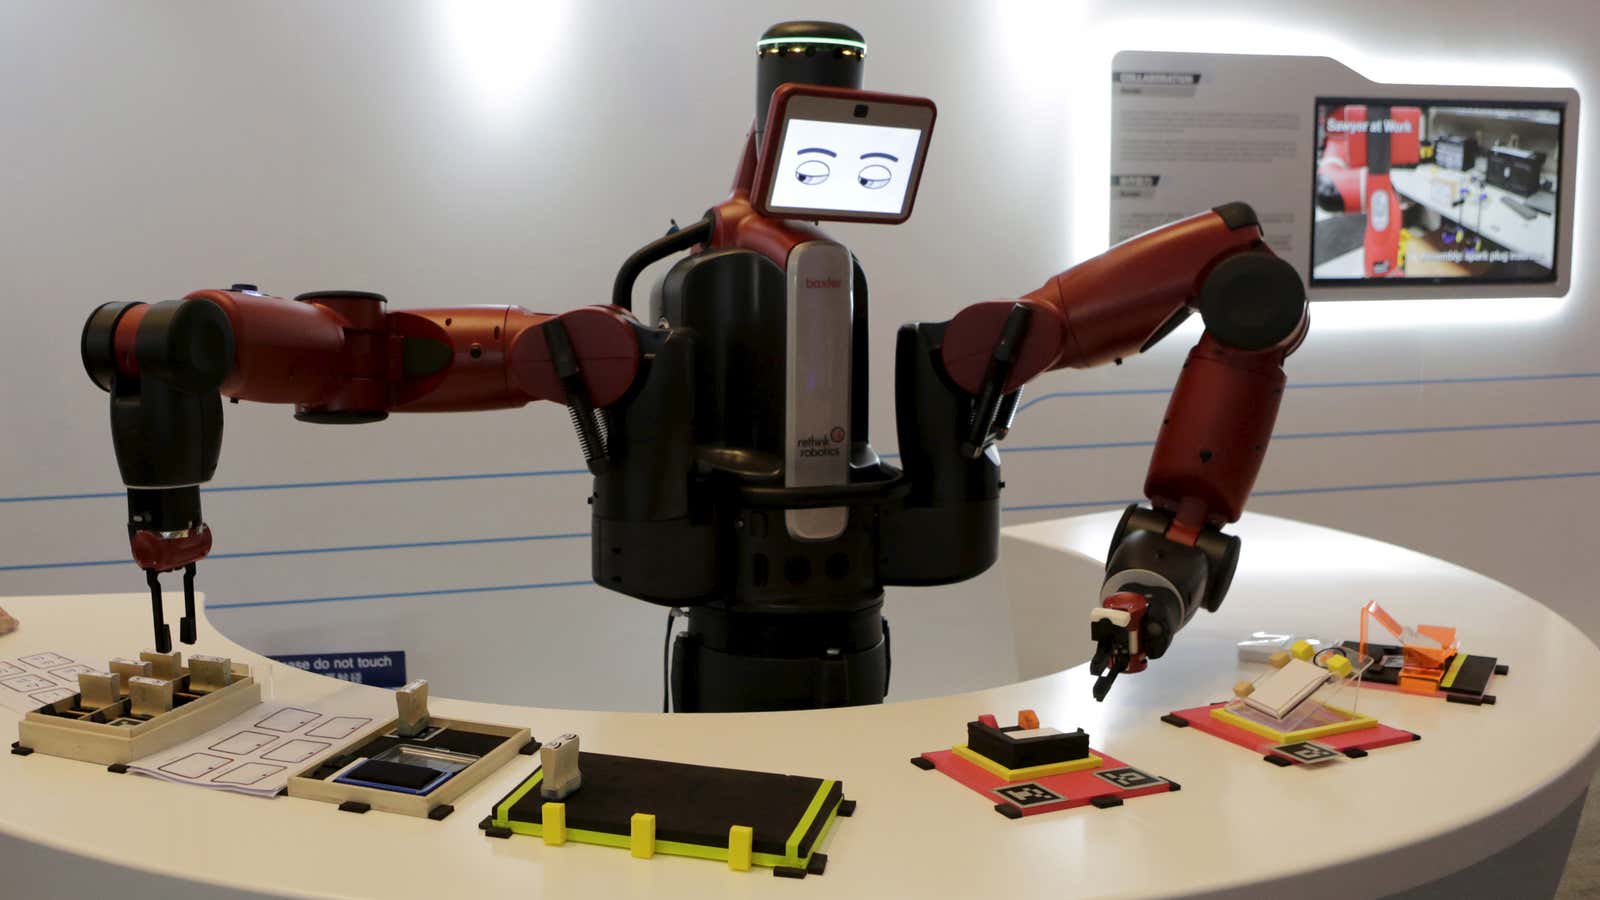 A Baxter robot at work.